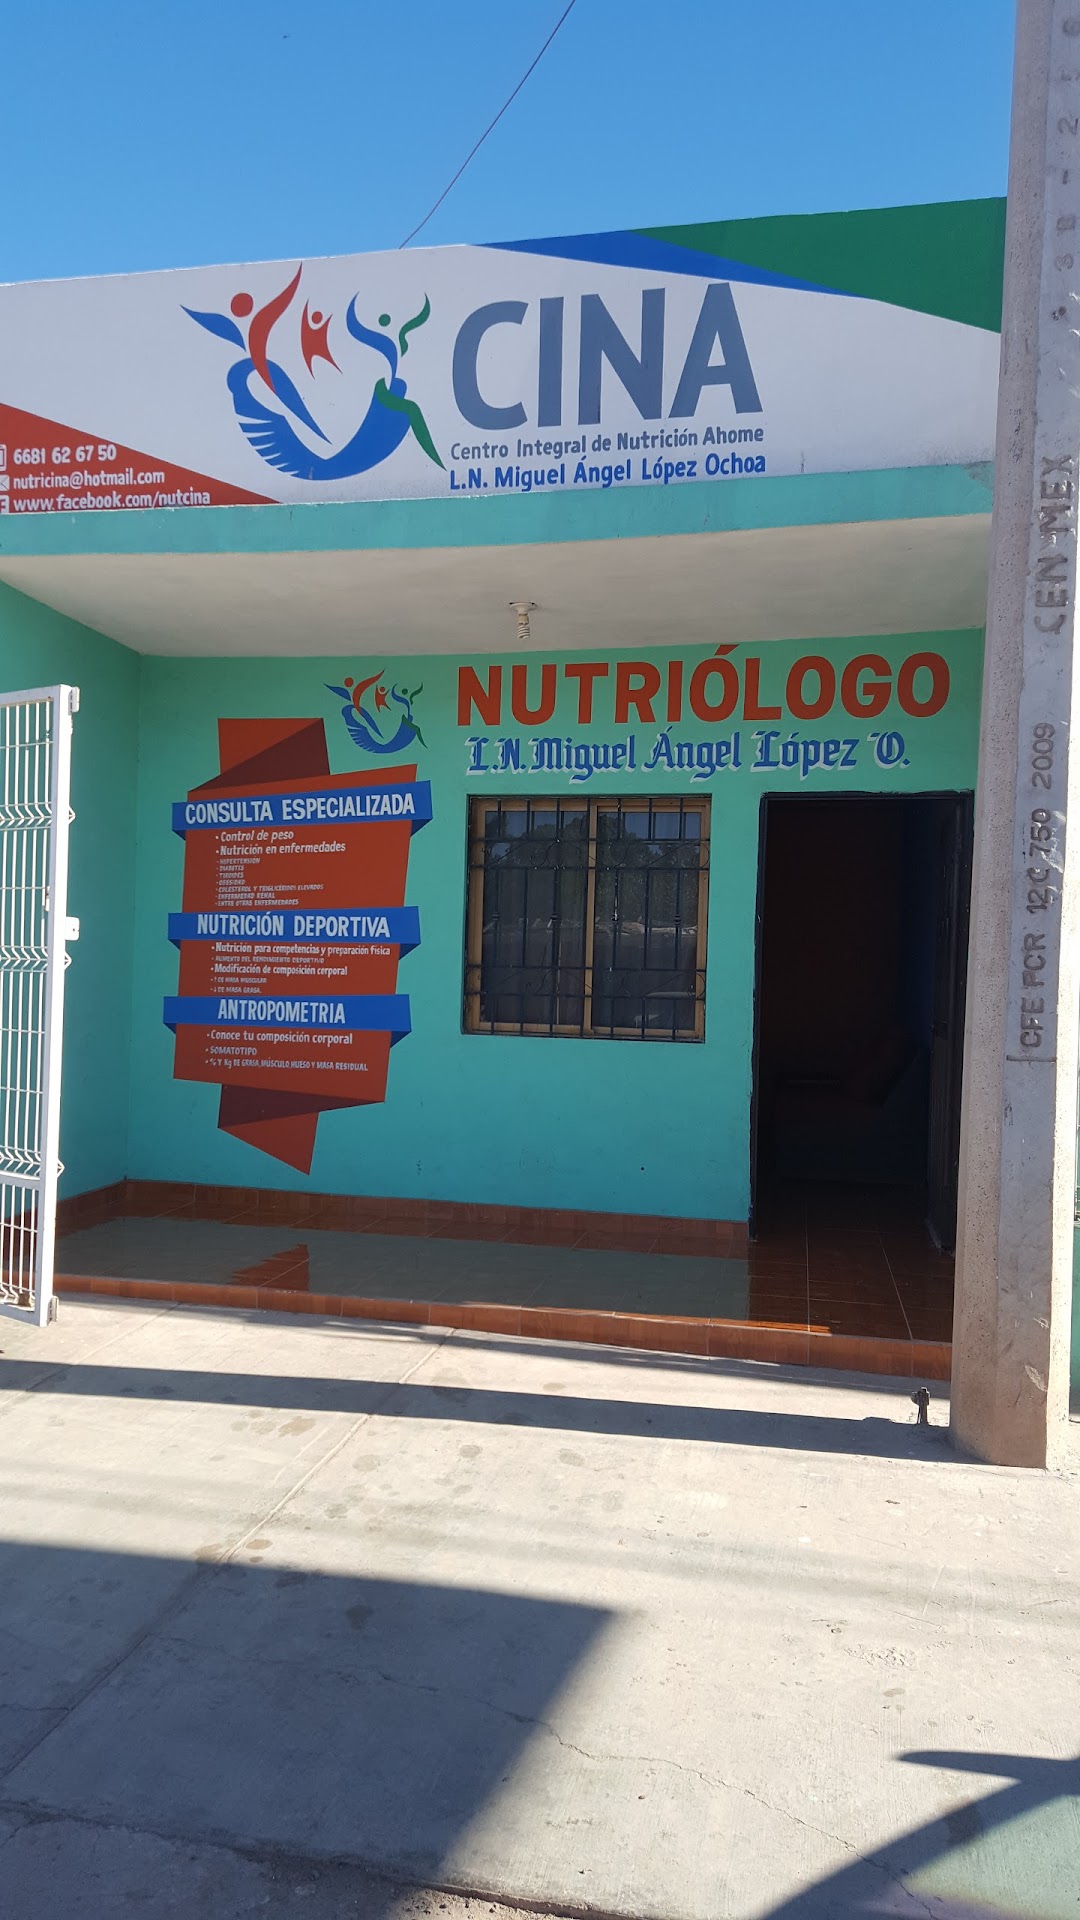 Centro Integral de Nutrición Ahome